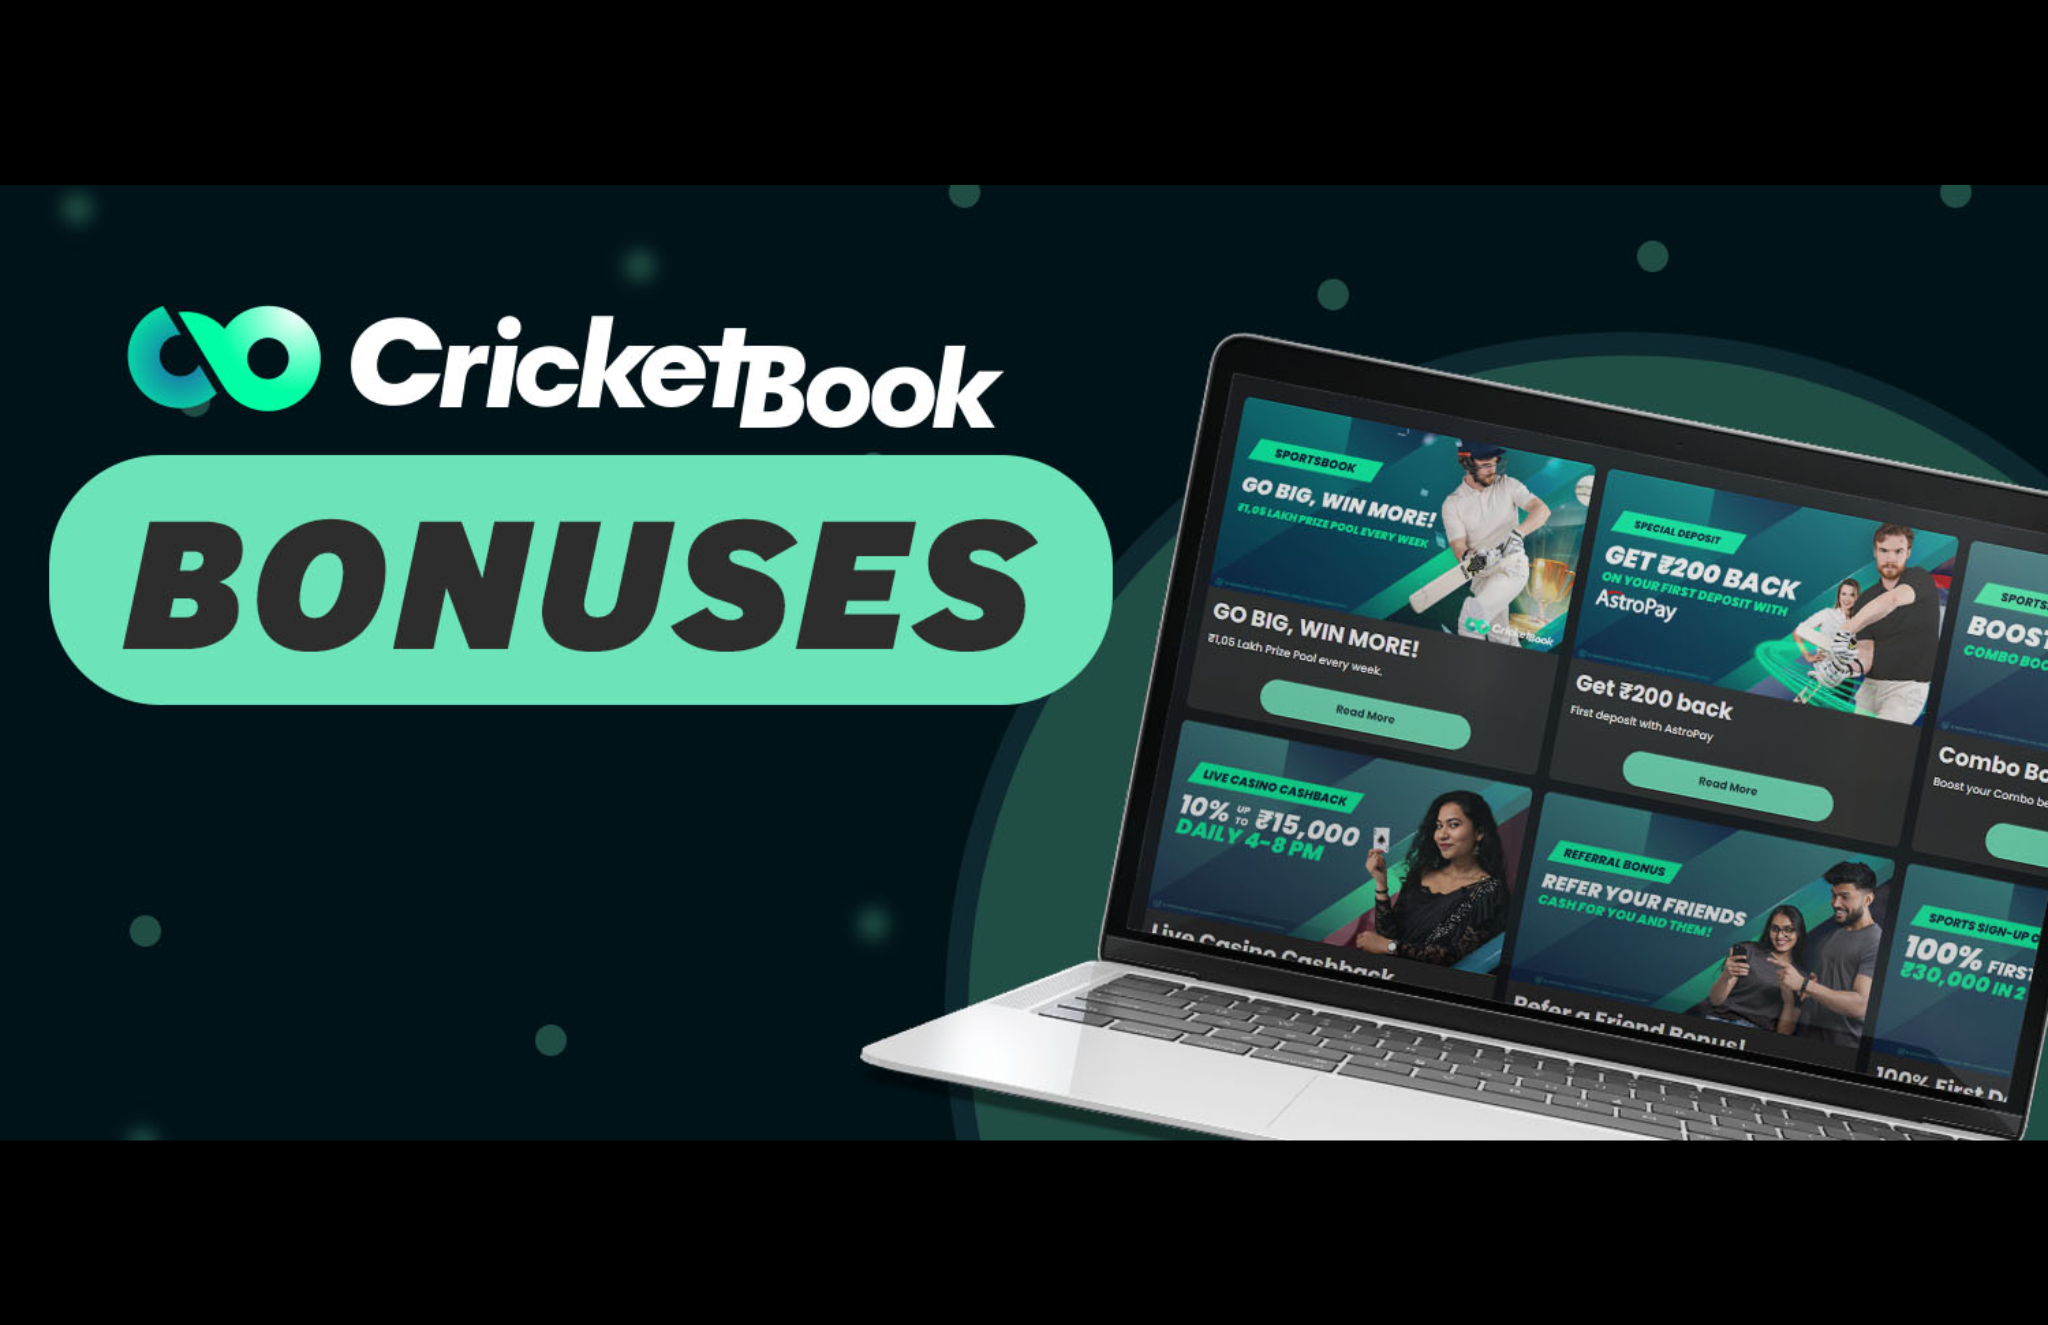 Cricketbook